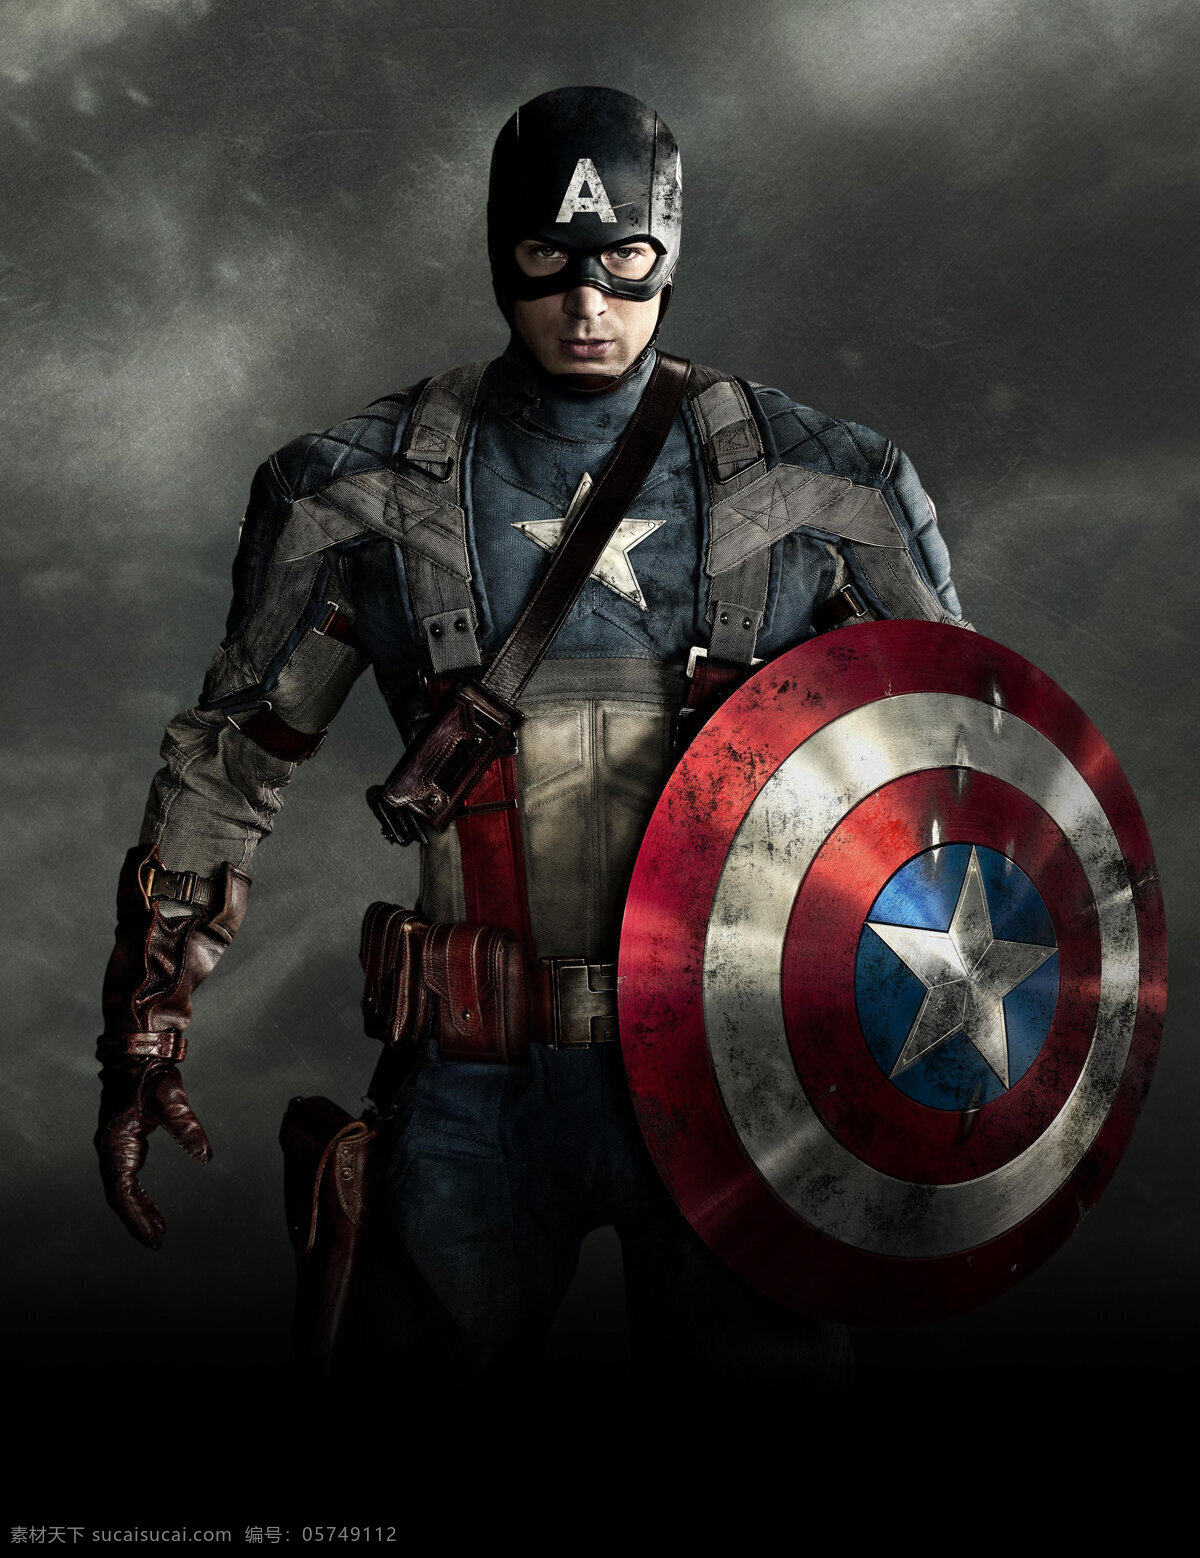 美国队长 电影海报 战士 战斗 英雄 英雄形象 英雄角色 英雄人物 惊悚 科幻 冒险 动作 影视娱乐 文化艺术